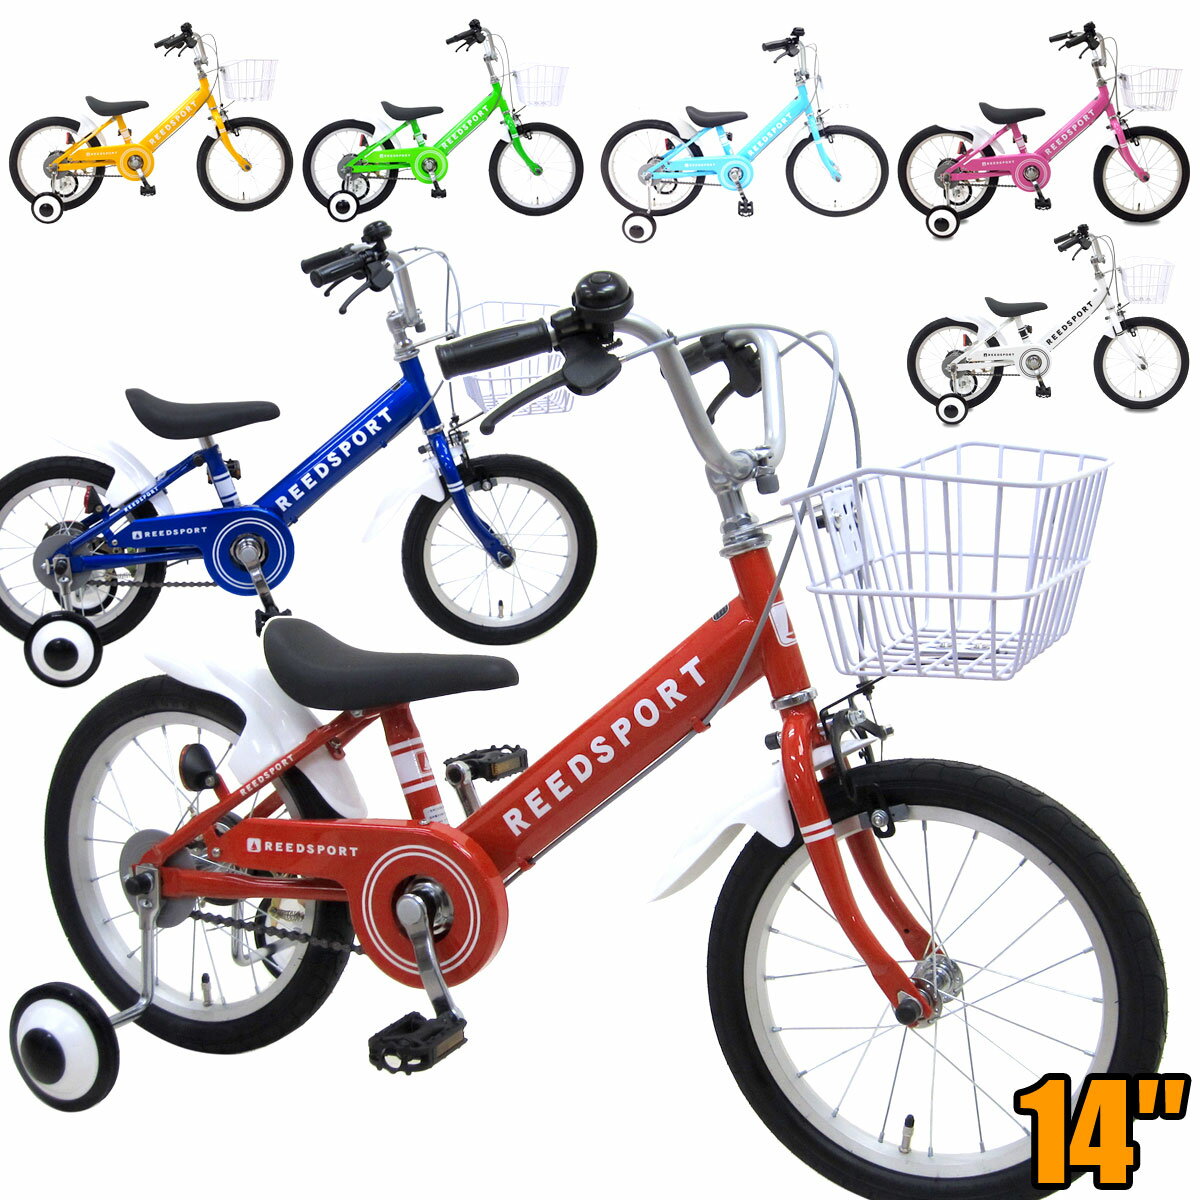 14インチ 子供用自転車 リーズポート 補助輪付き 自転車子供用 幼児用自転車 お客様組立 初めてにおすすめ